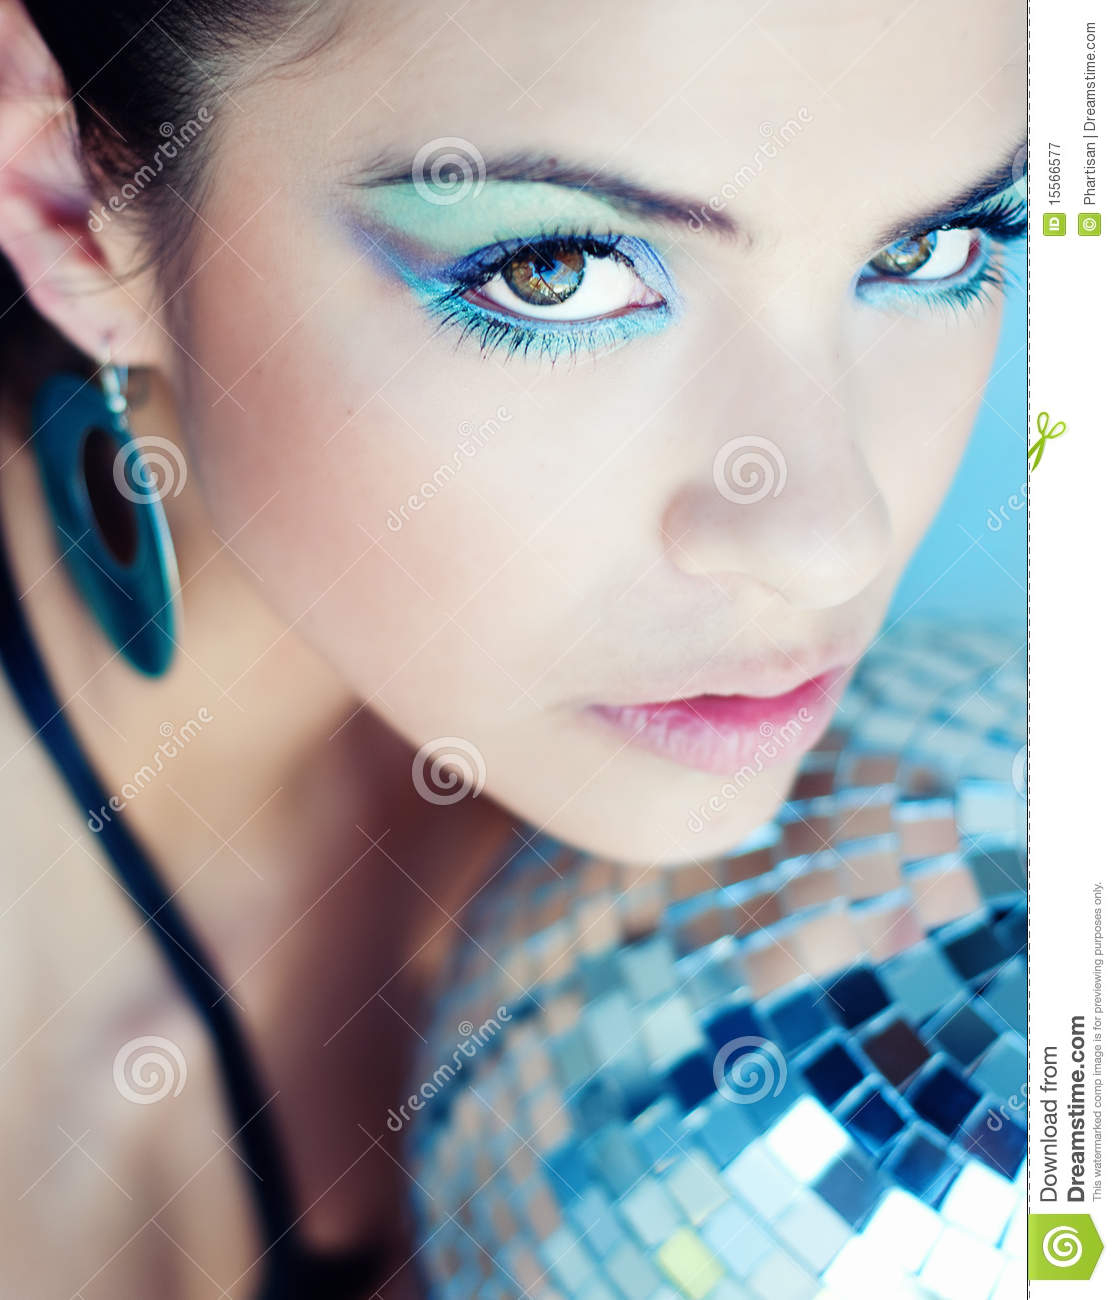 Ball Eye Makeup Woman Wearing Colorful Eye Makeup Stock Image Image Of Beauty